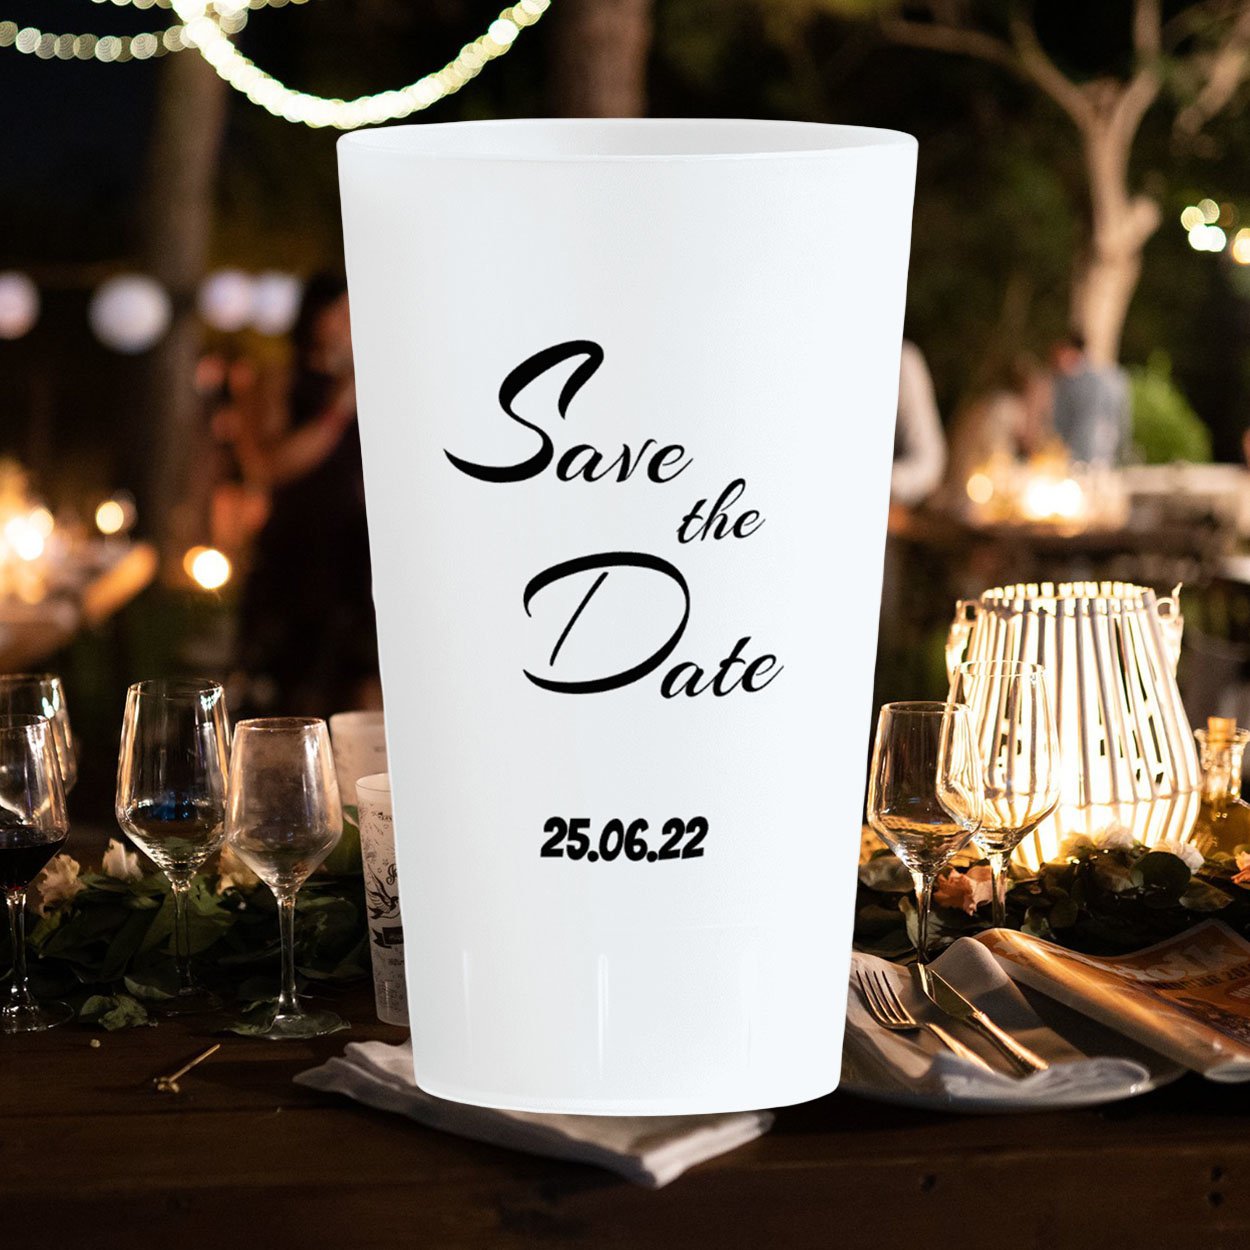 Eco30 - Reusable wedding cup 30cl / 10oz - Ecocup Canada